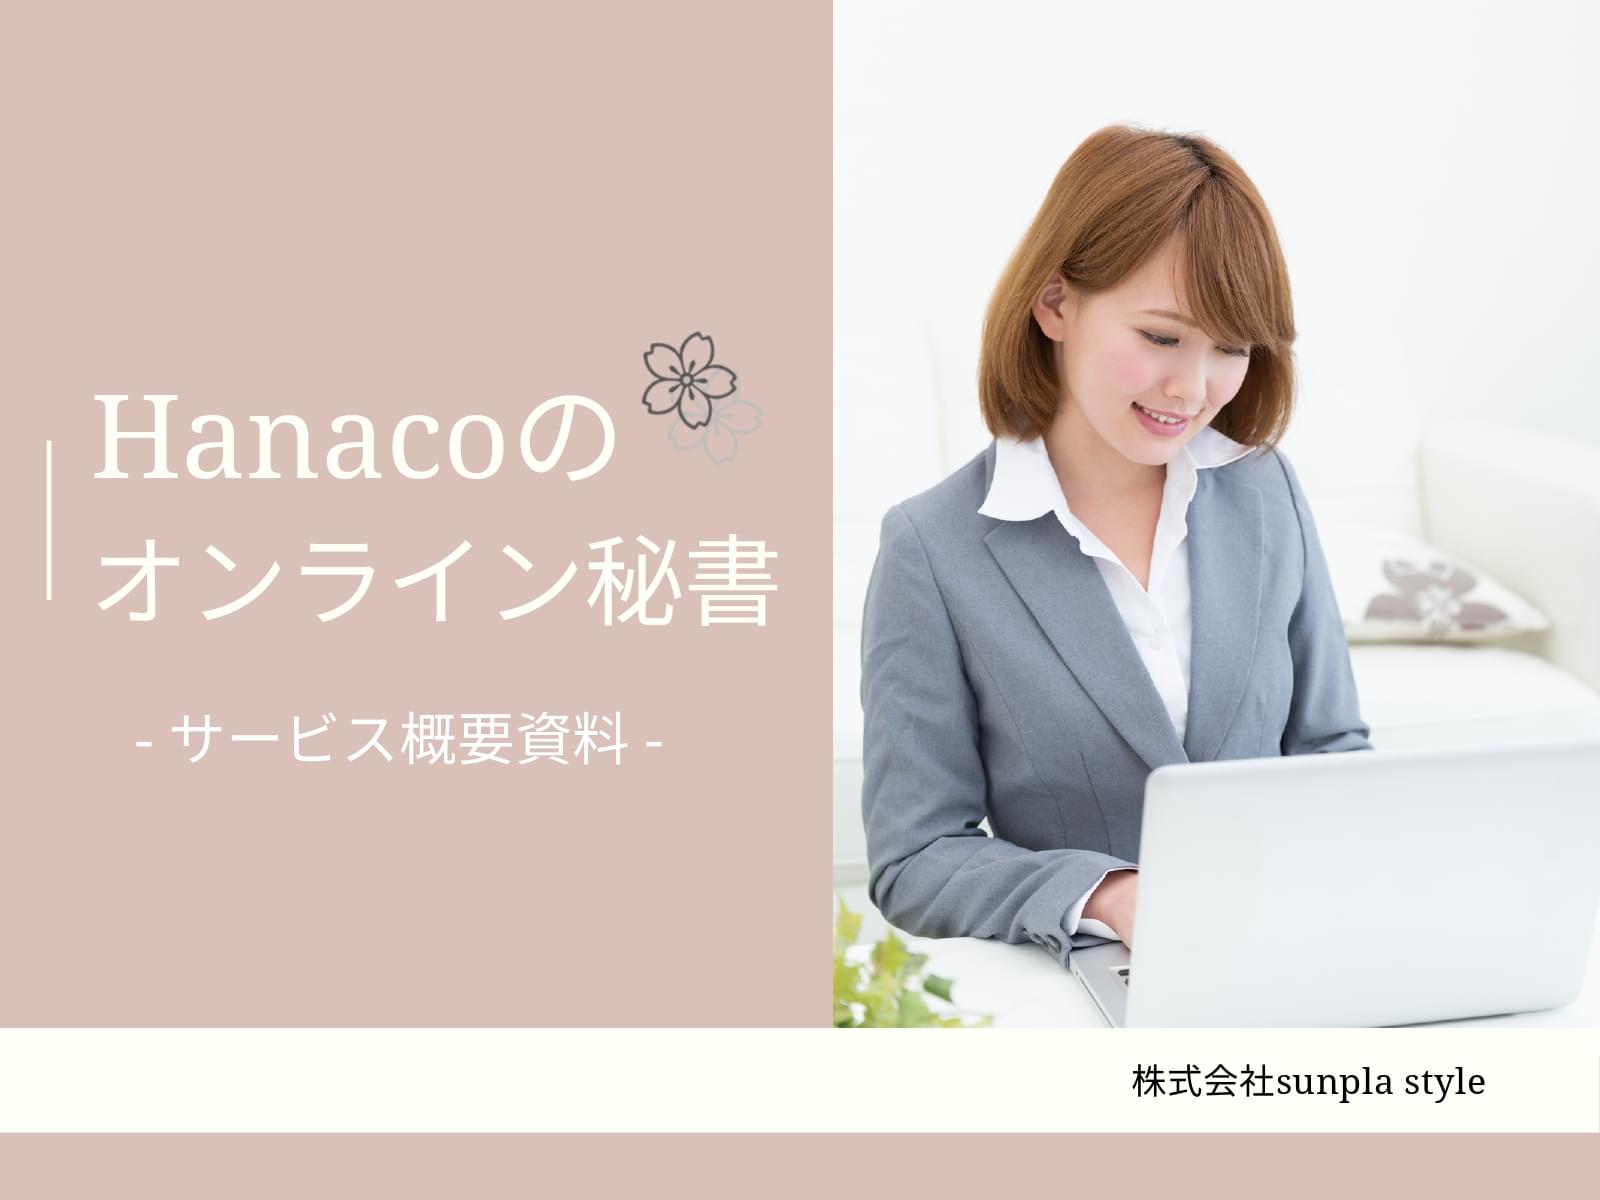 Hanacoのオンライン秘書